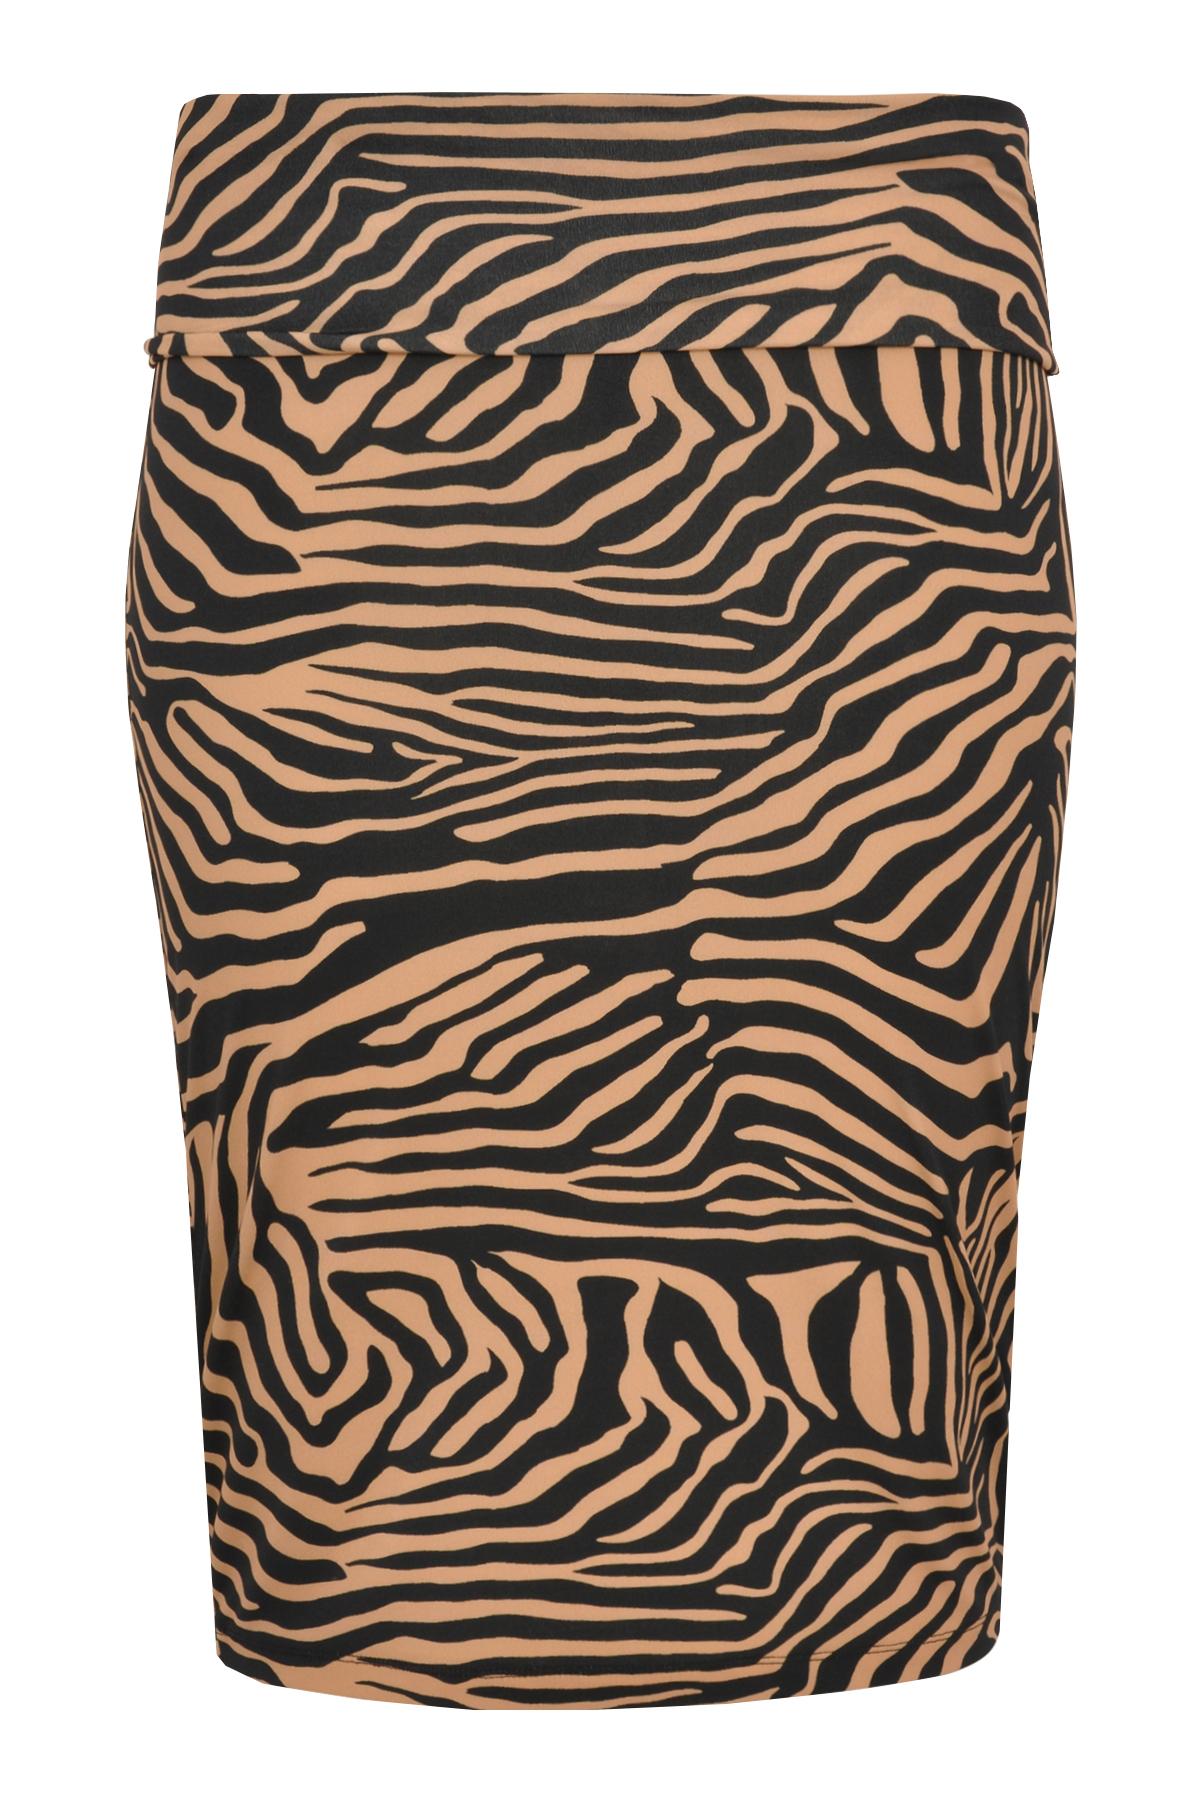 Skirt ZEBRA - brown